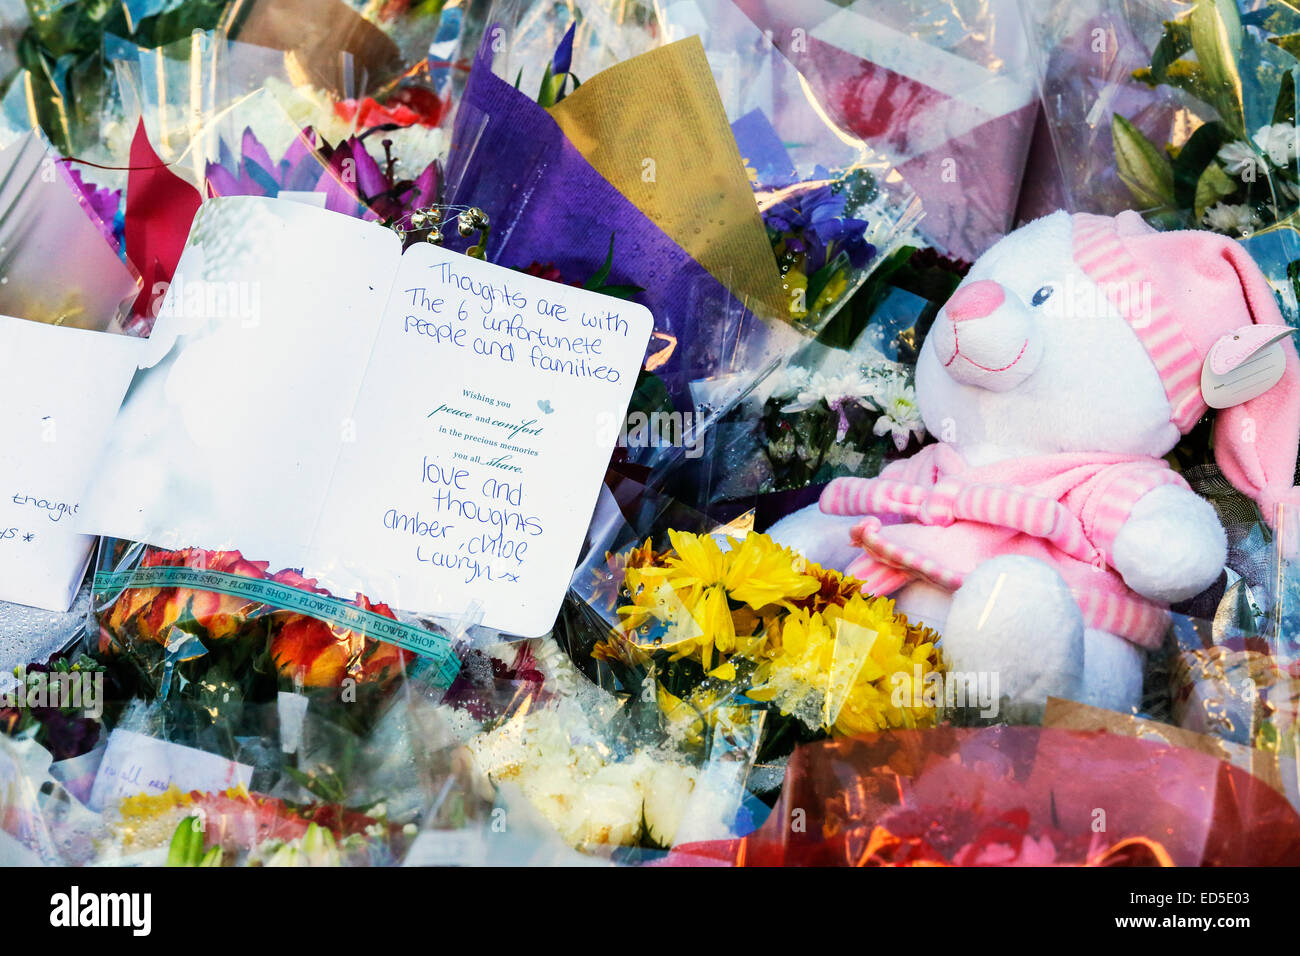 Más de 1000 personas participaron en una vigilia de velas de 2 minutos en el Royal Exchange Square, Glasgow en recuerdo de las 6 personas que fueron víctimas del accidente de camiones tolva de Glasgow en la plaza George hace una semana. Muchas personas llevaron flores, velas y algunos dijeron oraciones como una marca de apoyo y sus condolencias. Foto de stock